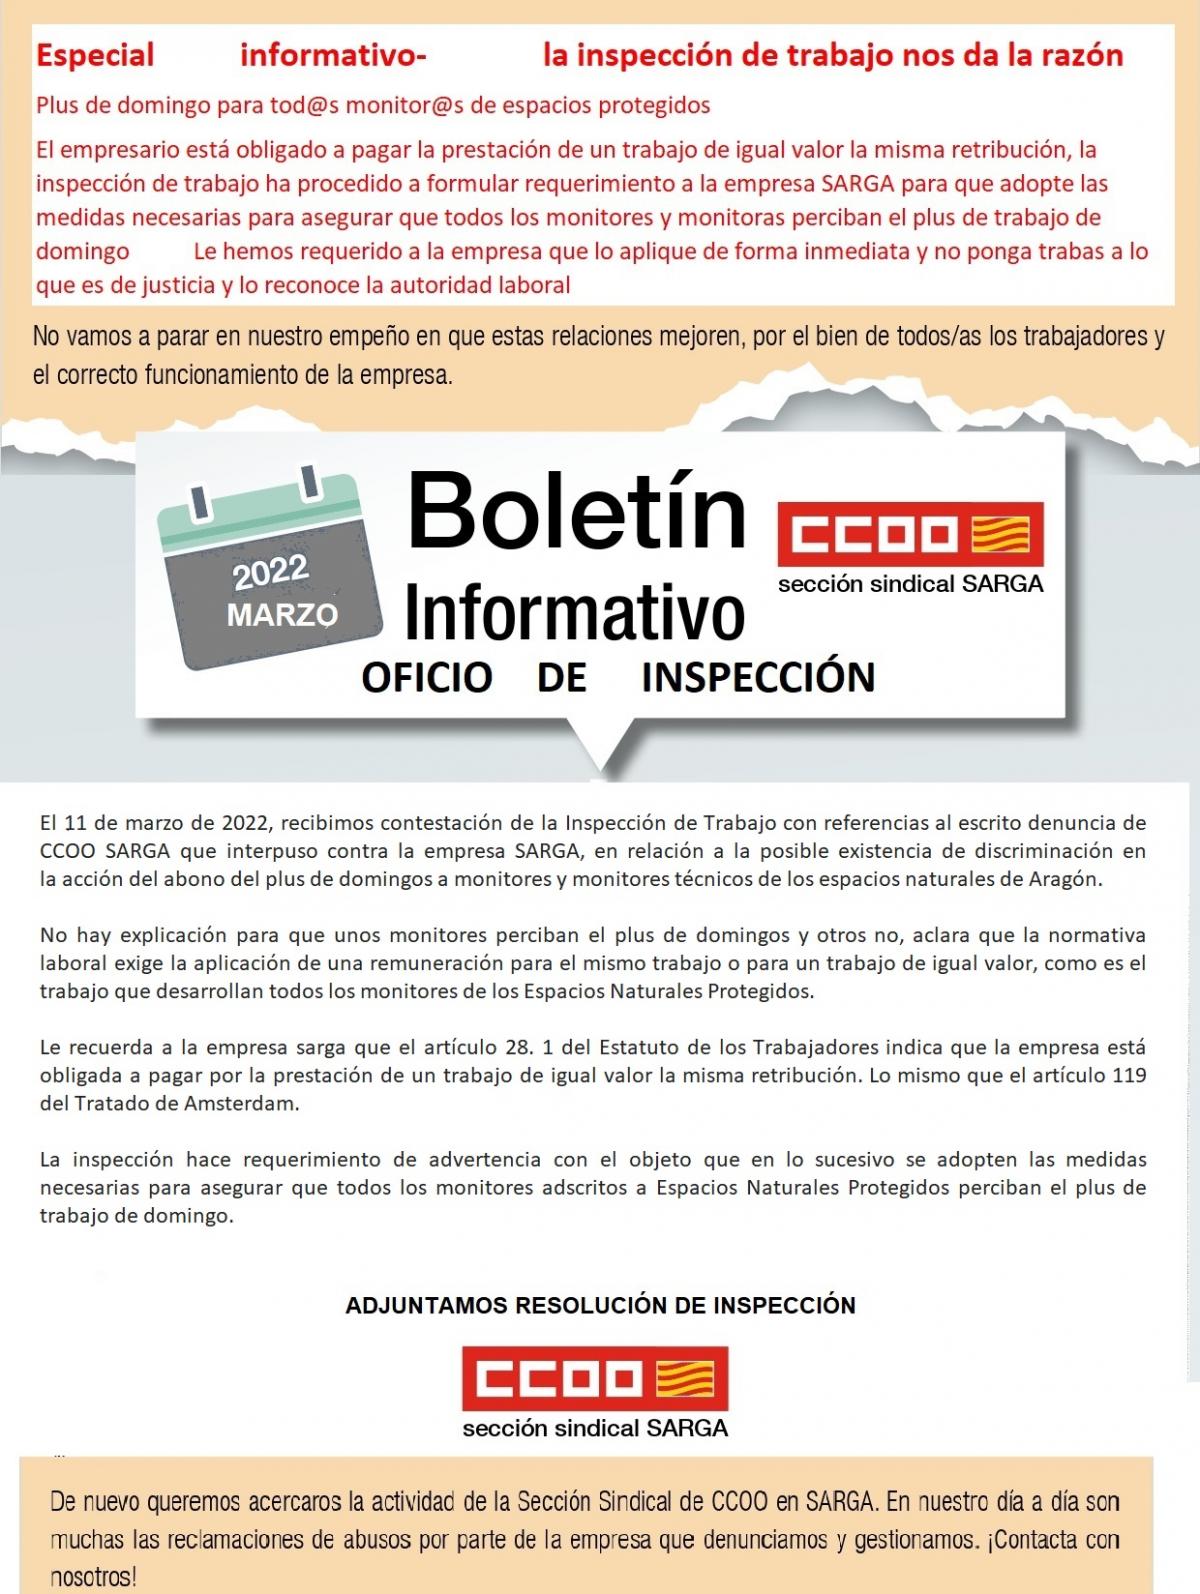 Boletin informativo OFICIO DE INSPECCIÓN